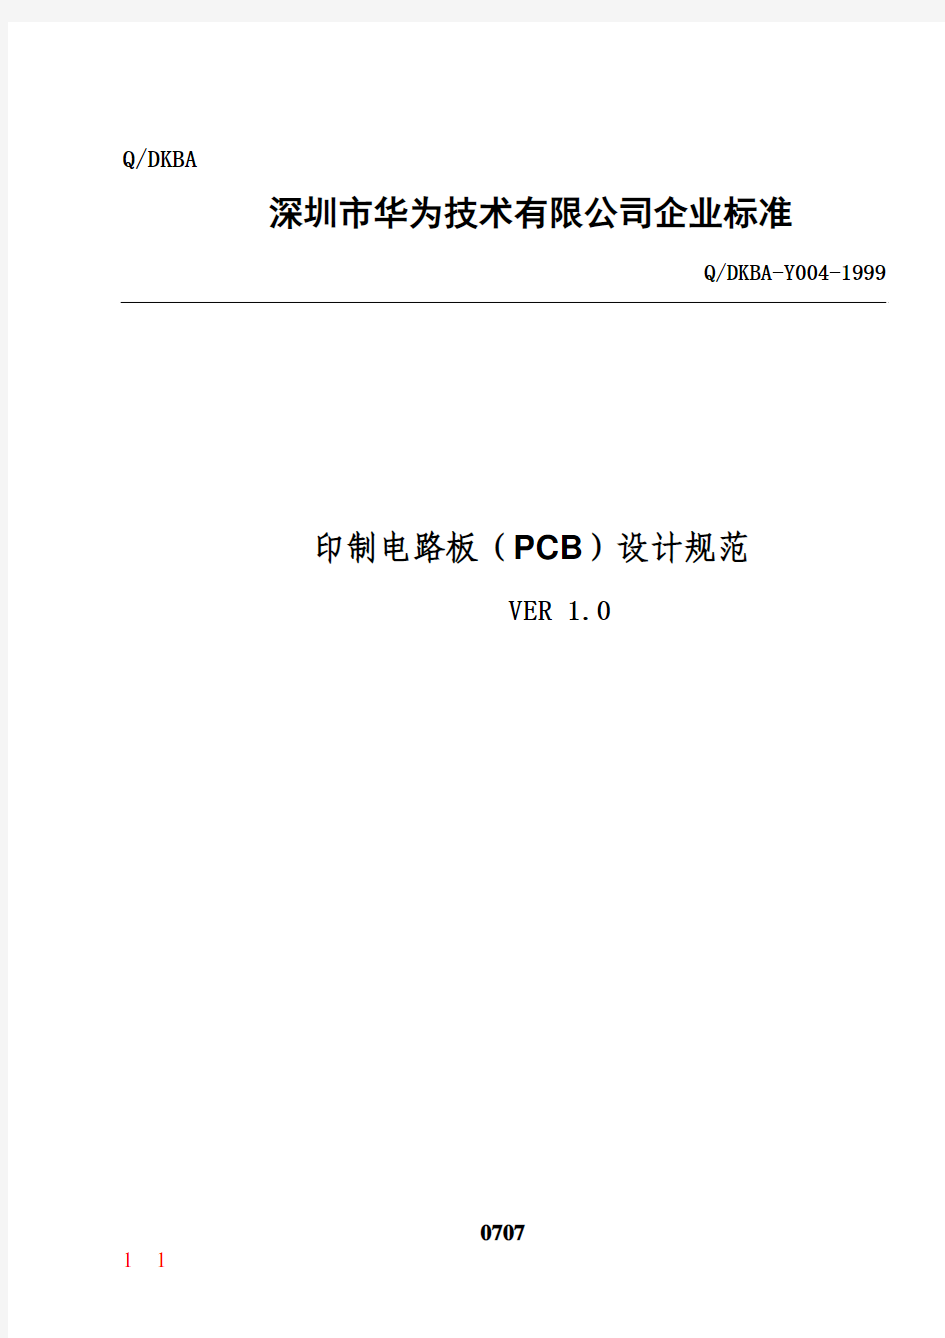 华为公司印制电路板(PCB)设计规范